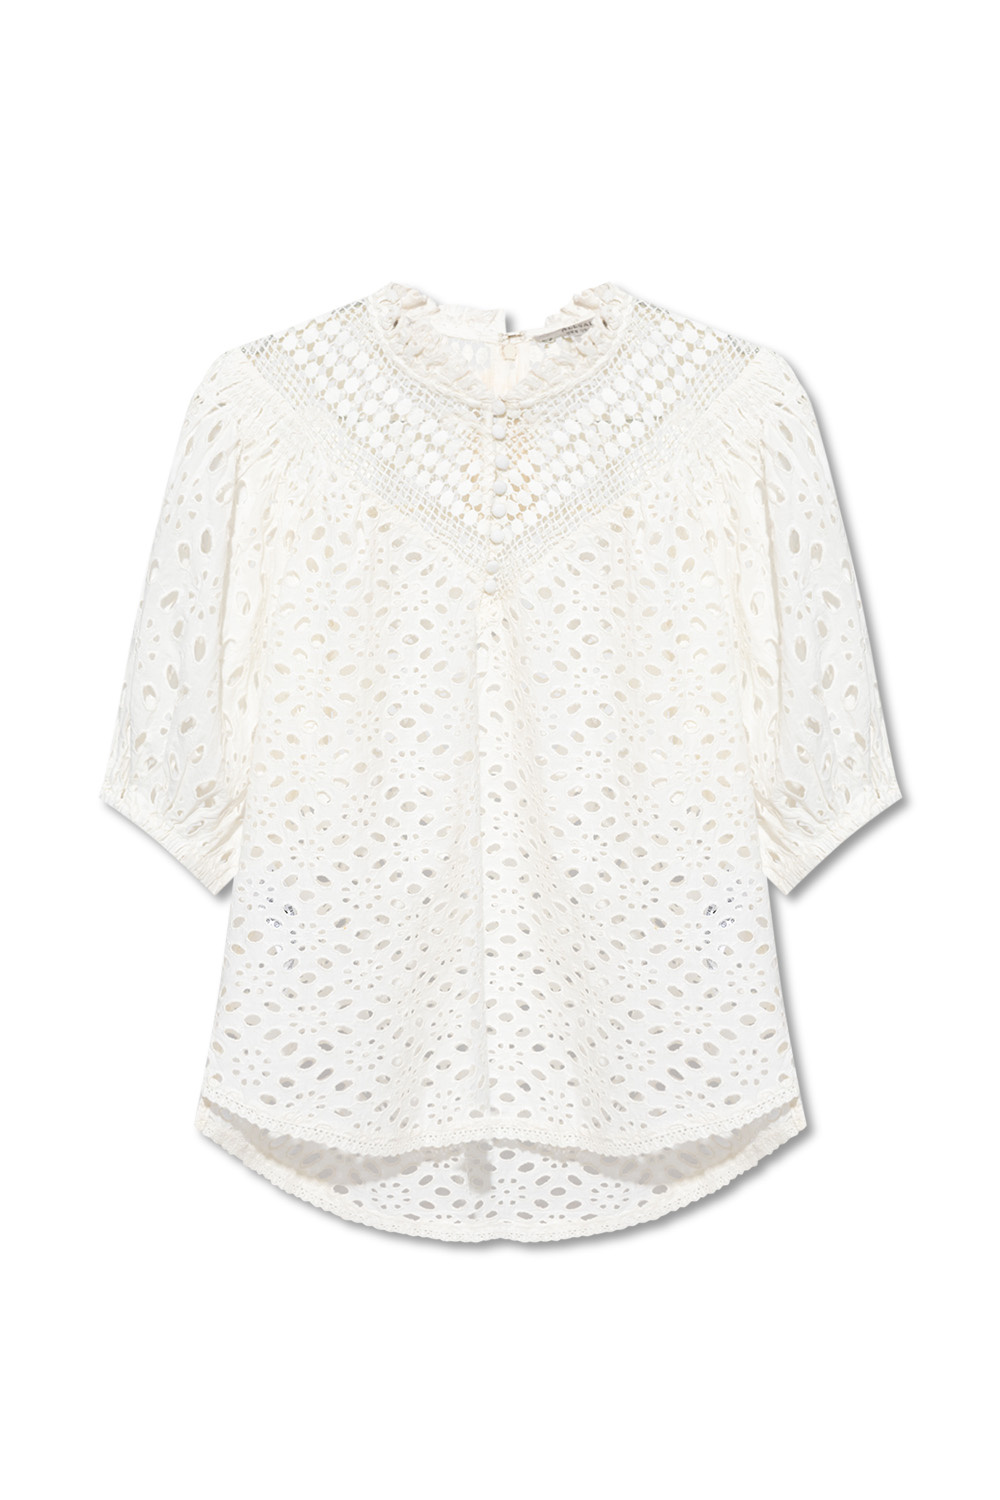 White ‘Tila’ floral top AllSaints - Vitkac GB